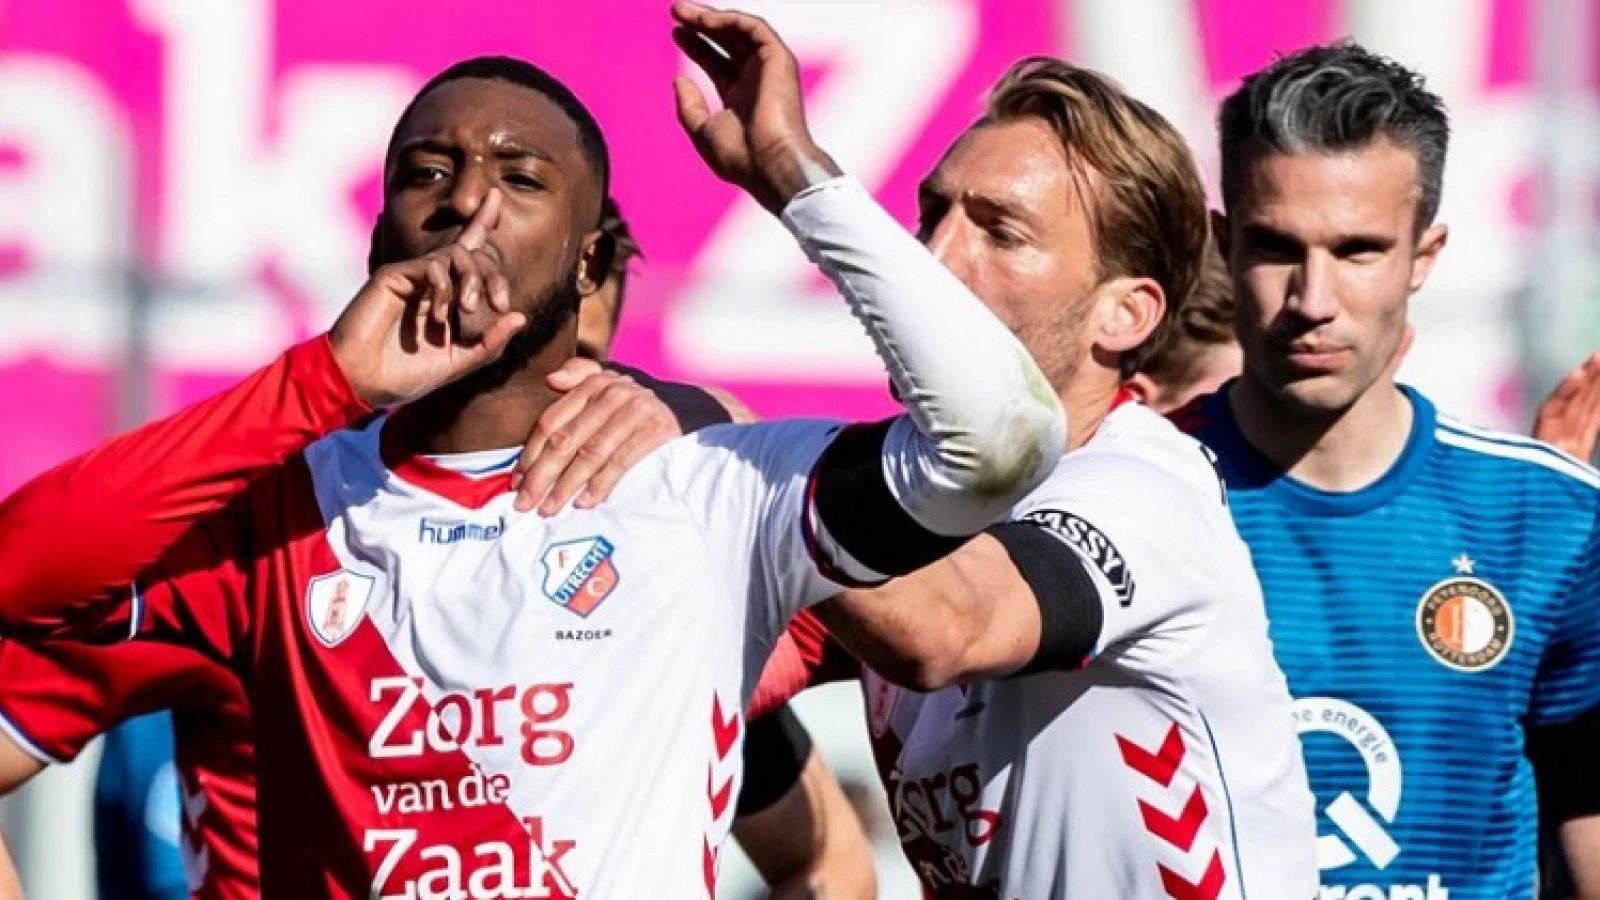 Naam Bazoer in verband gebracht met Feyenoord: 'Advocaat wilde hem meenemen'